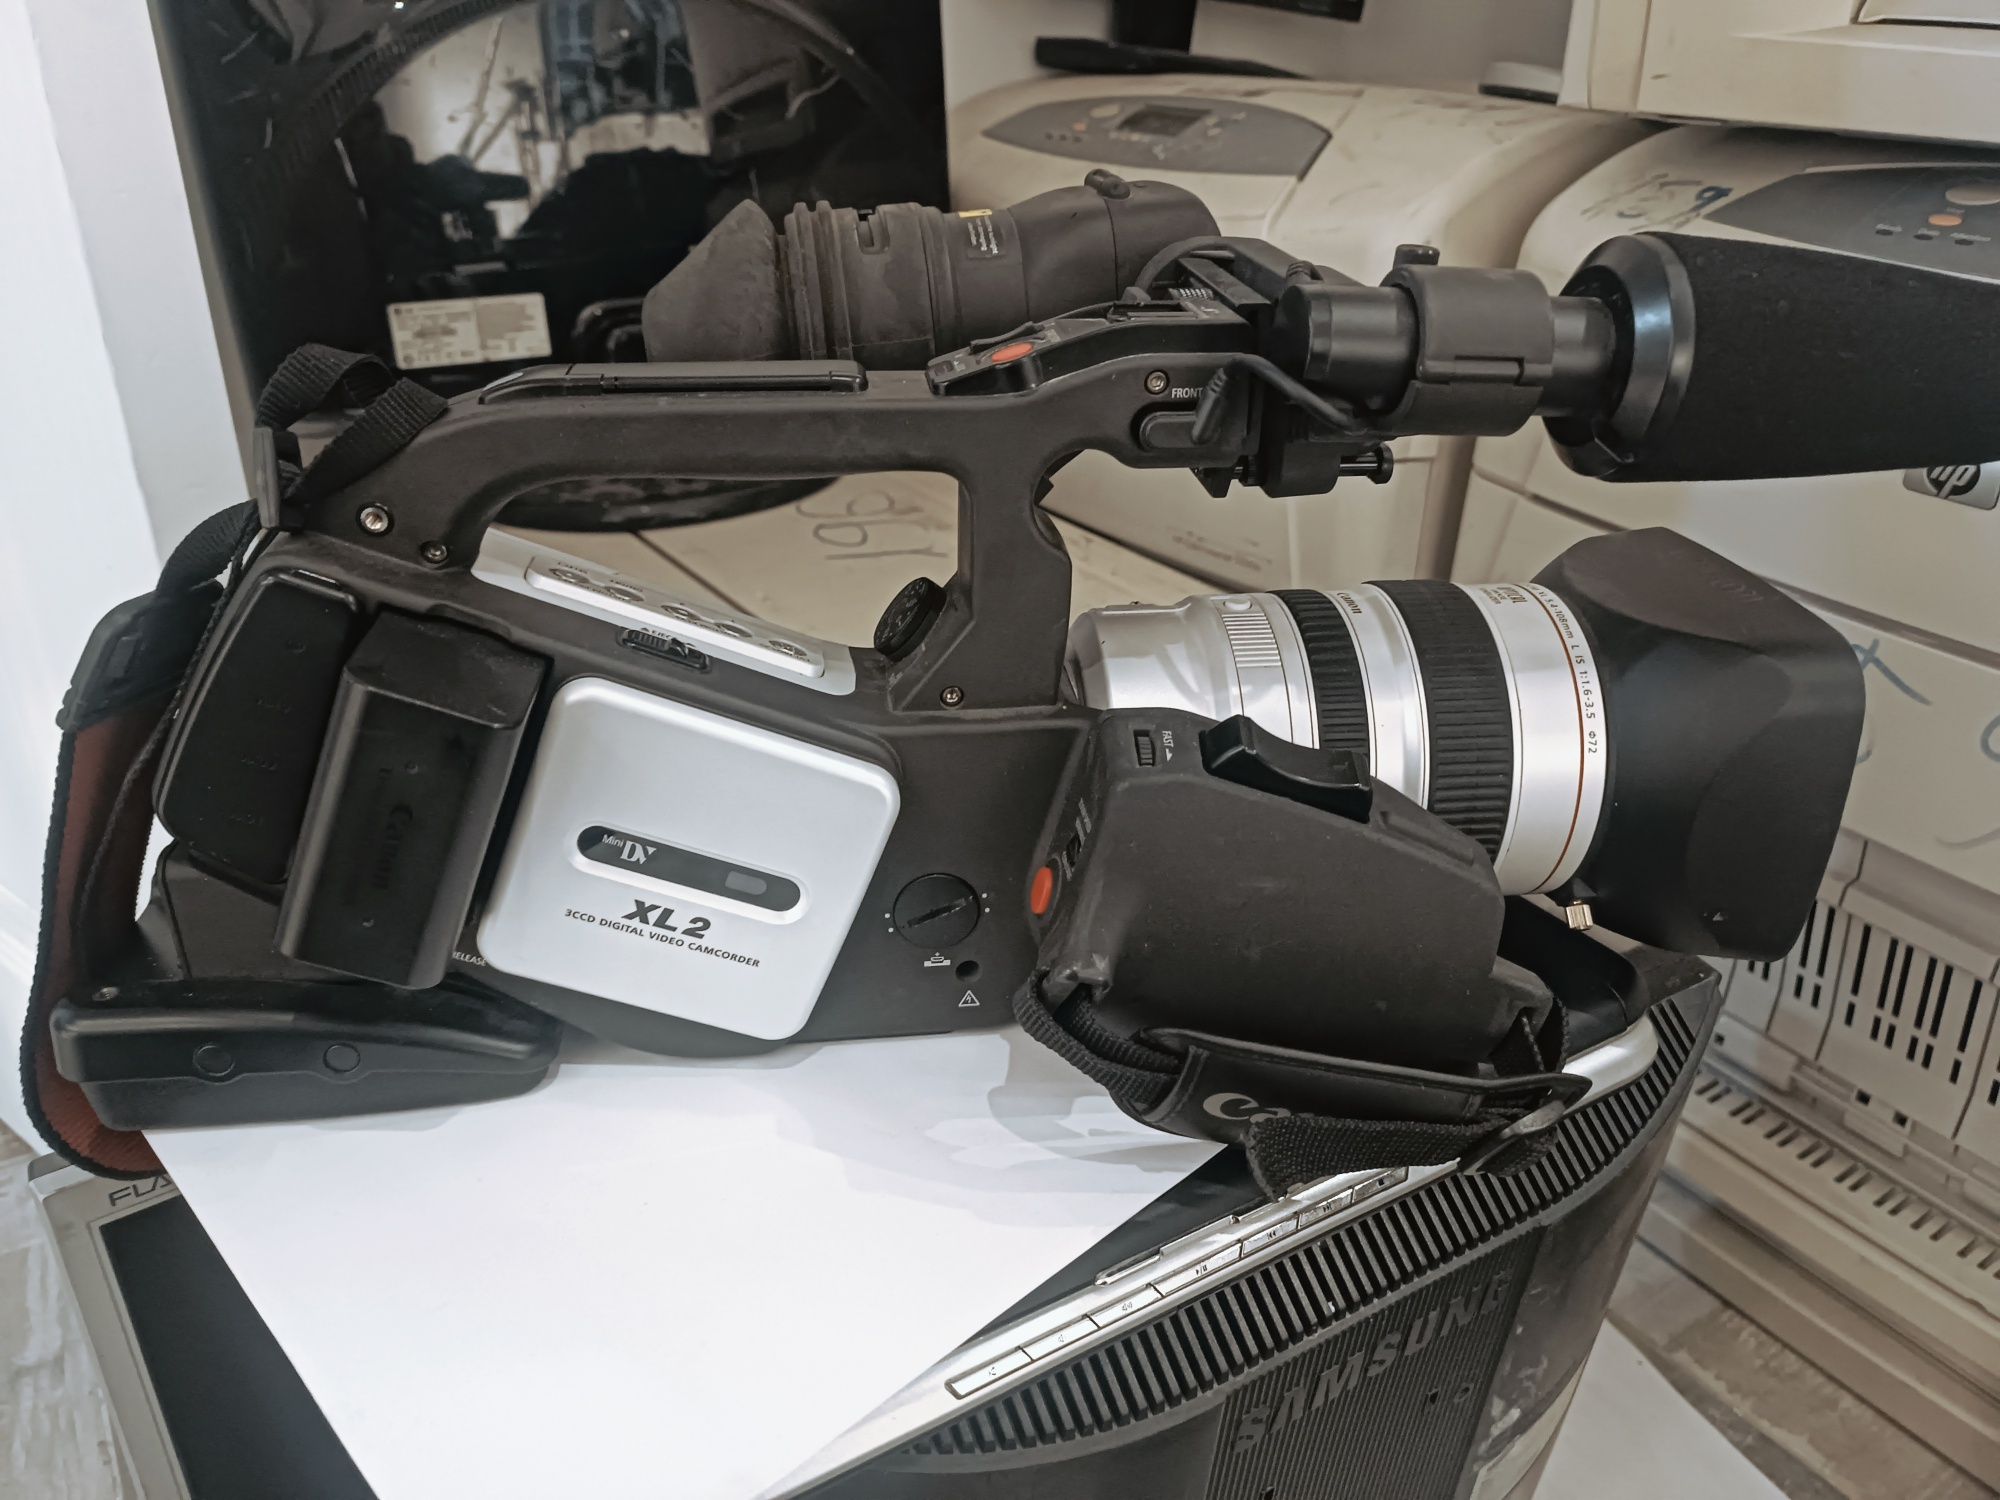 Профессиональная видеокамера Canon XL2